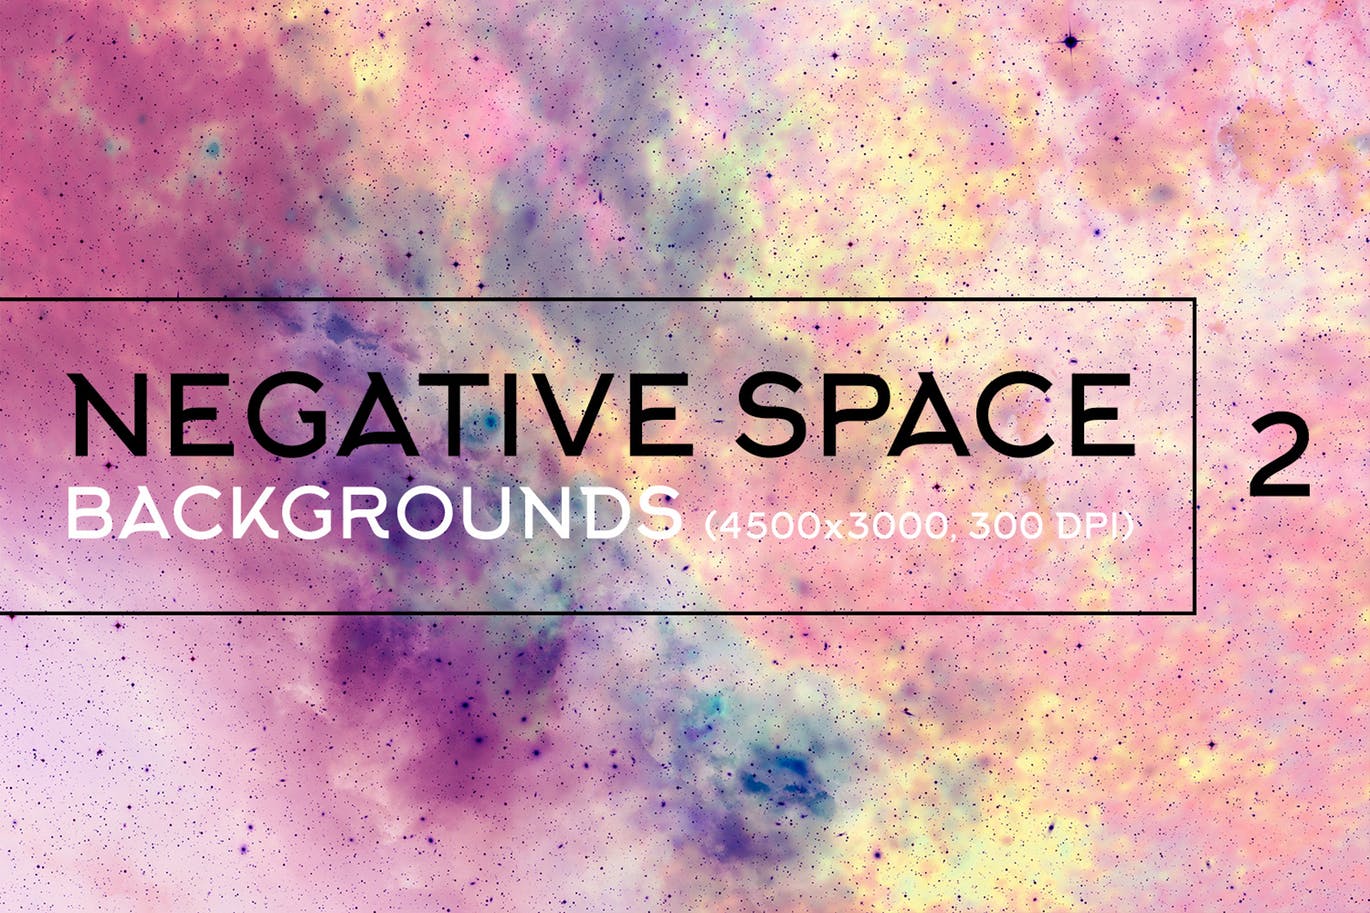 负空间太空高清背景图片素材v2 Negative Space Backgrounds 2插图